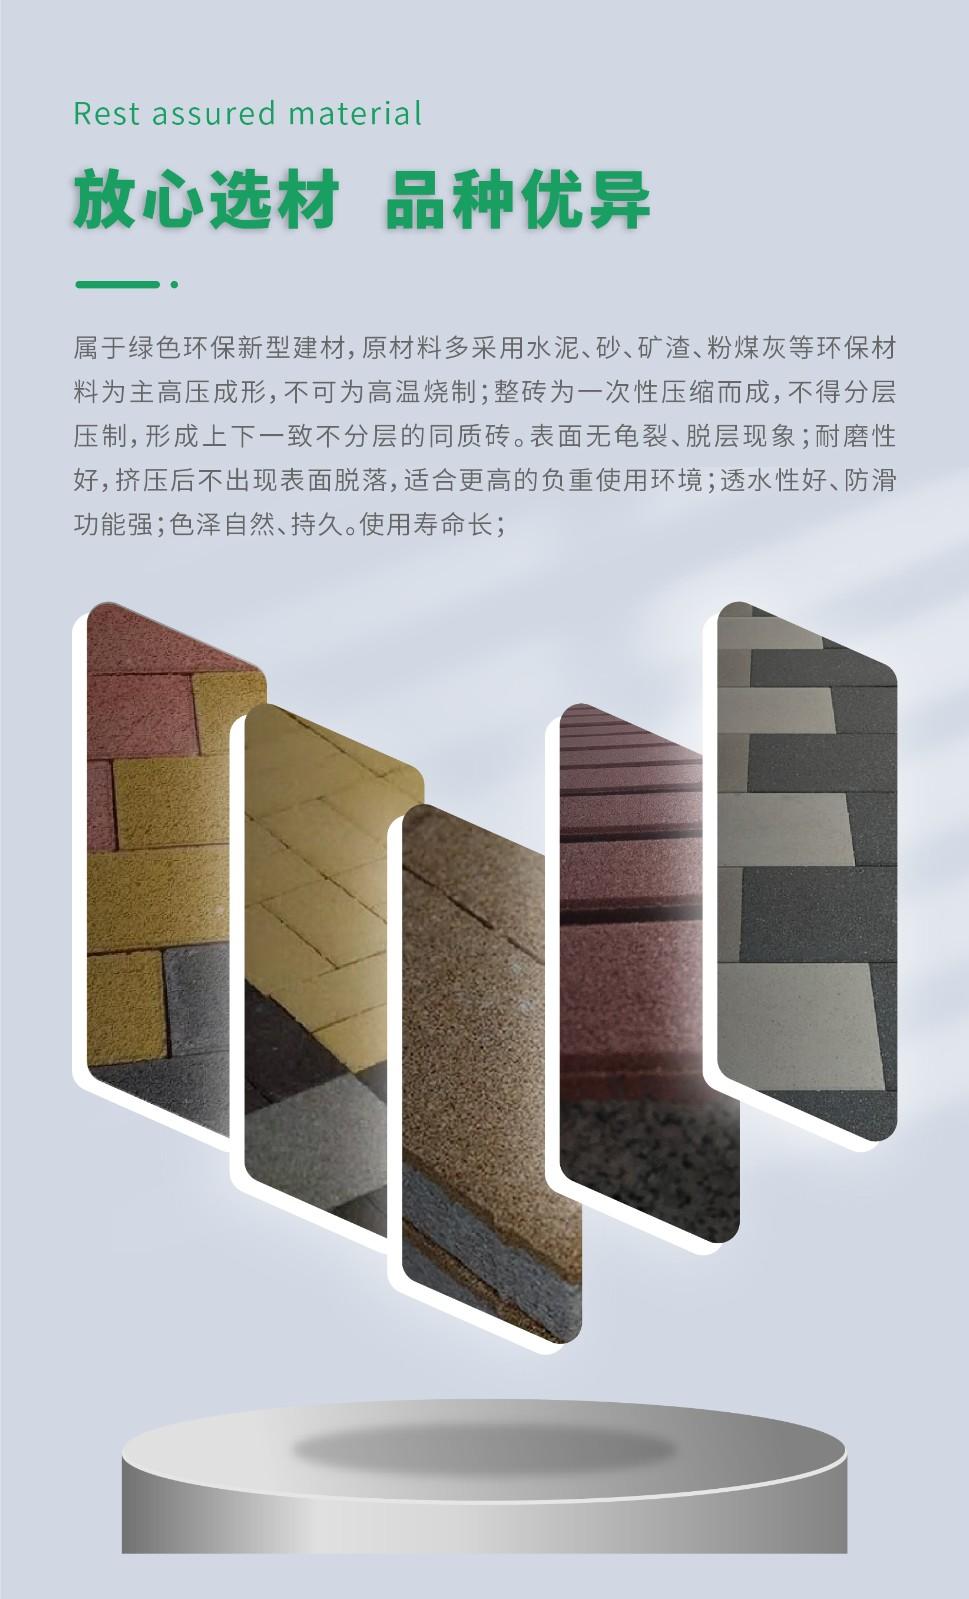 京津冀厂家直供面包砖、透水砖、路面砖